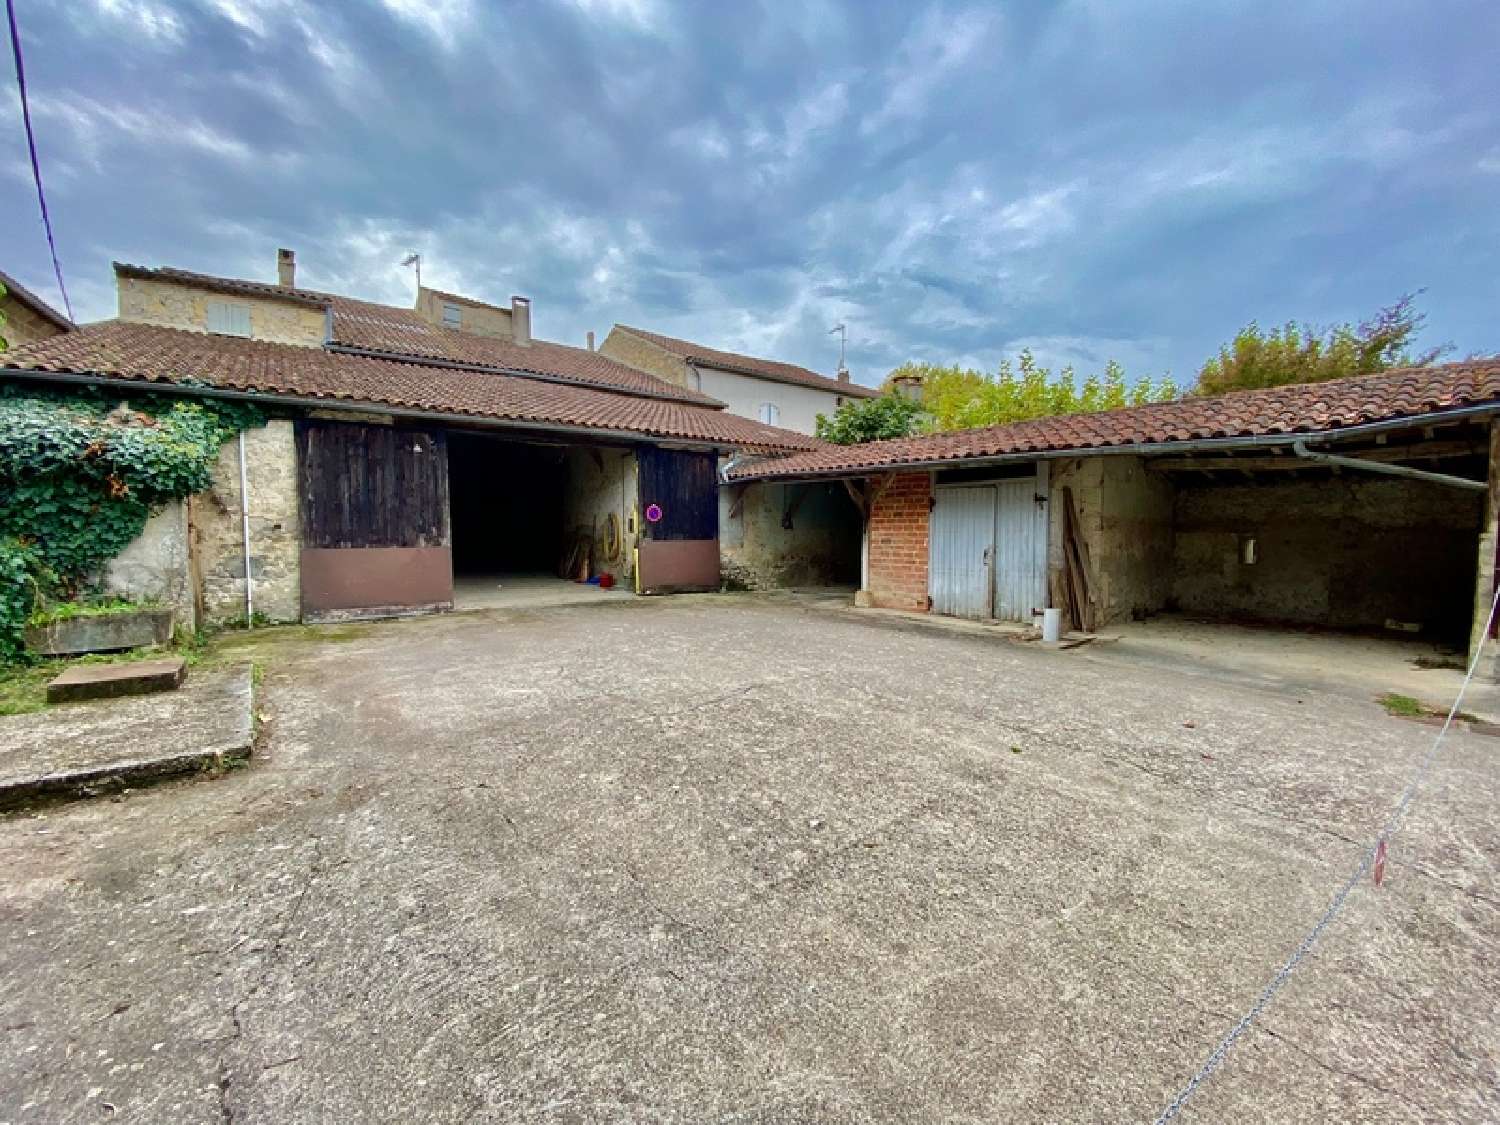  for sale village house Saumont Lot-et-Garonne 2